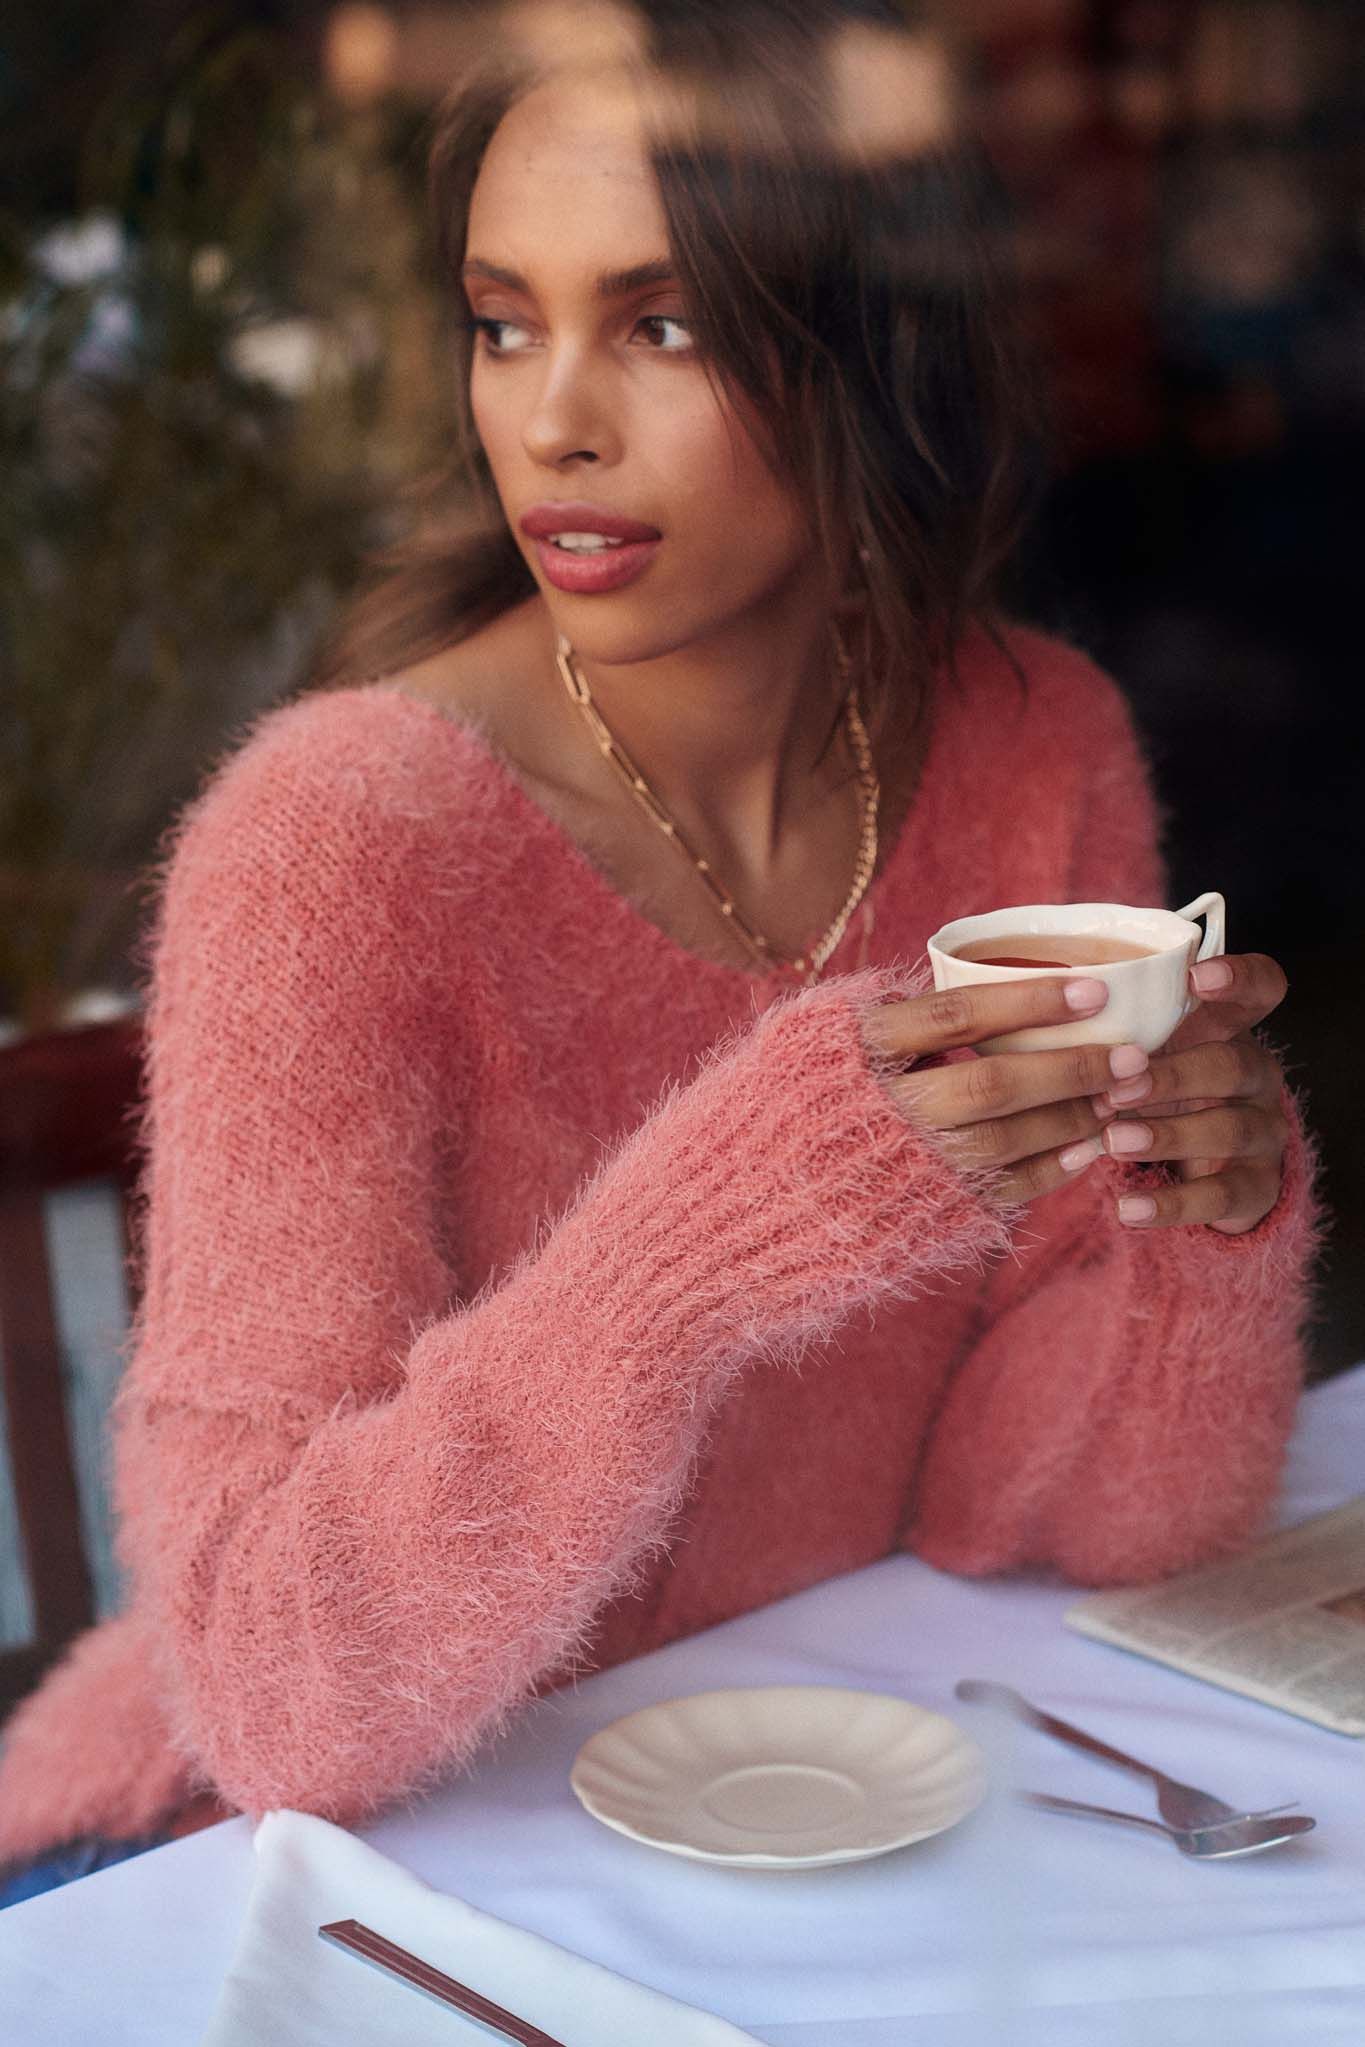 Angora sweater – coziest sweater